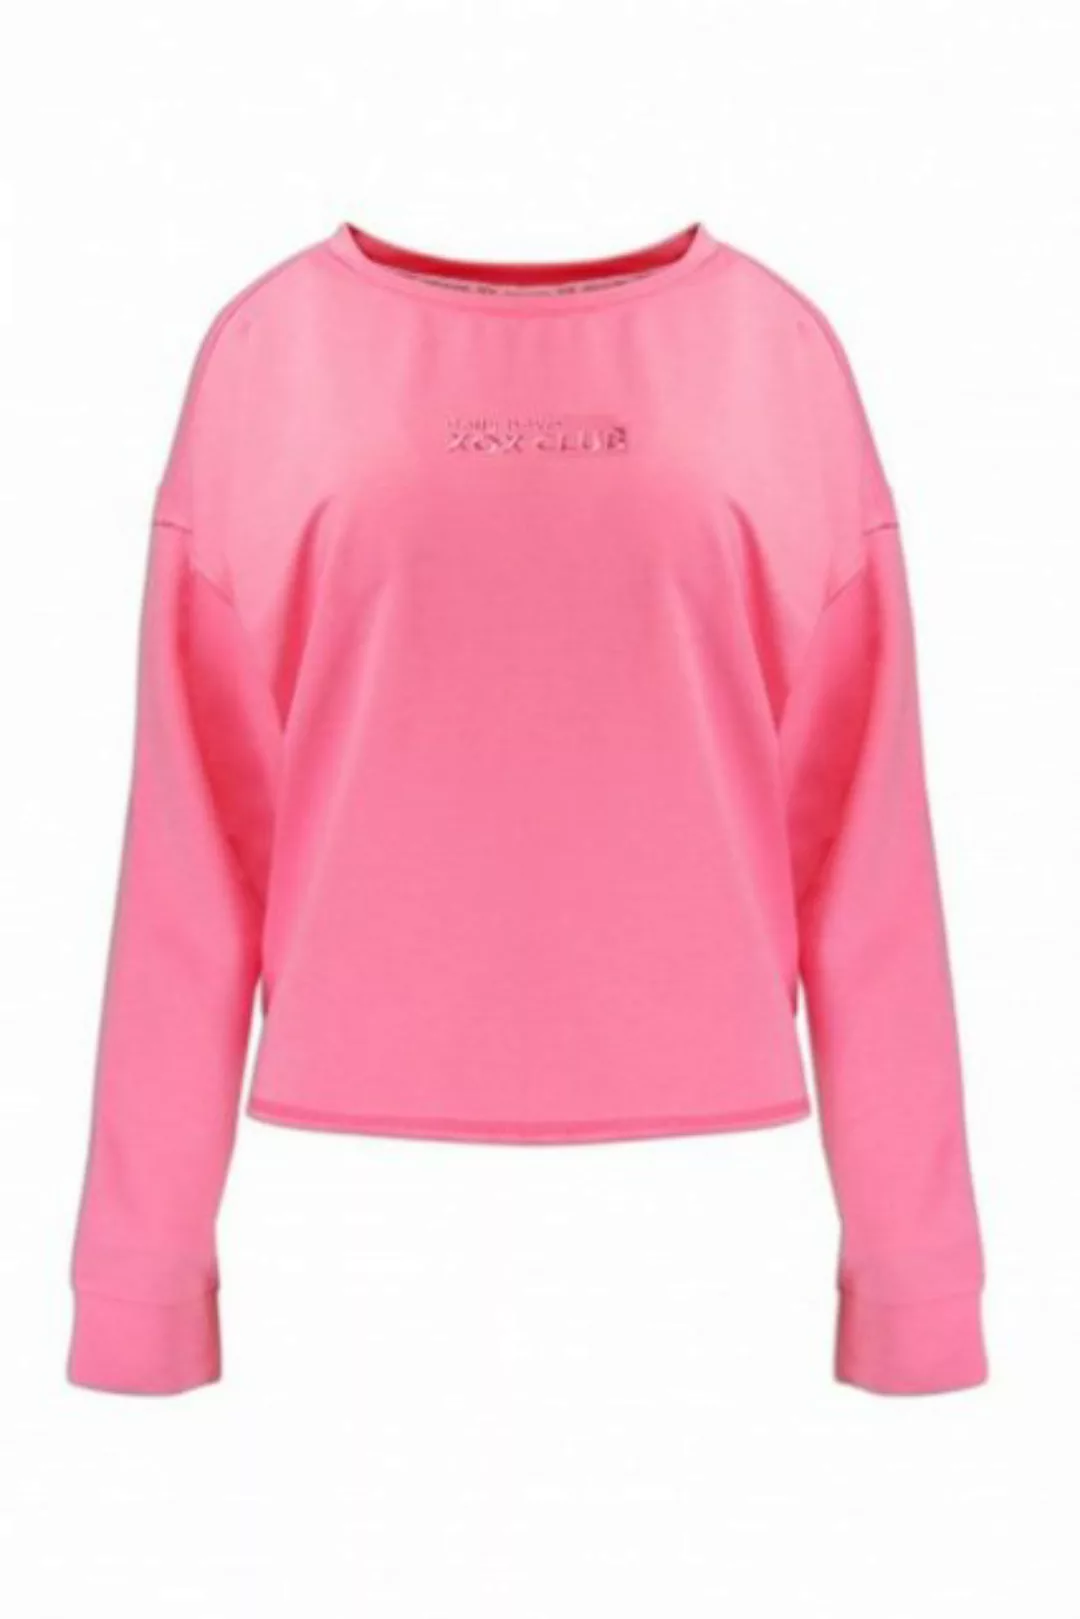 XOX Hoodie XOX Sweatshirt U-Boot Ausschnitt, Longsleeve, pink - Fair Trade, günstig online kaufen